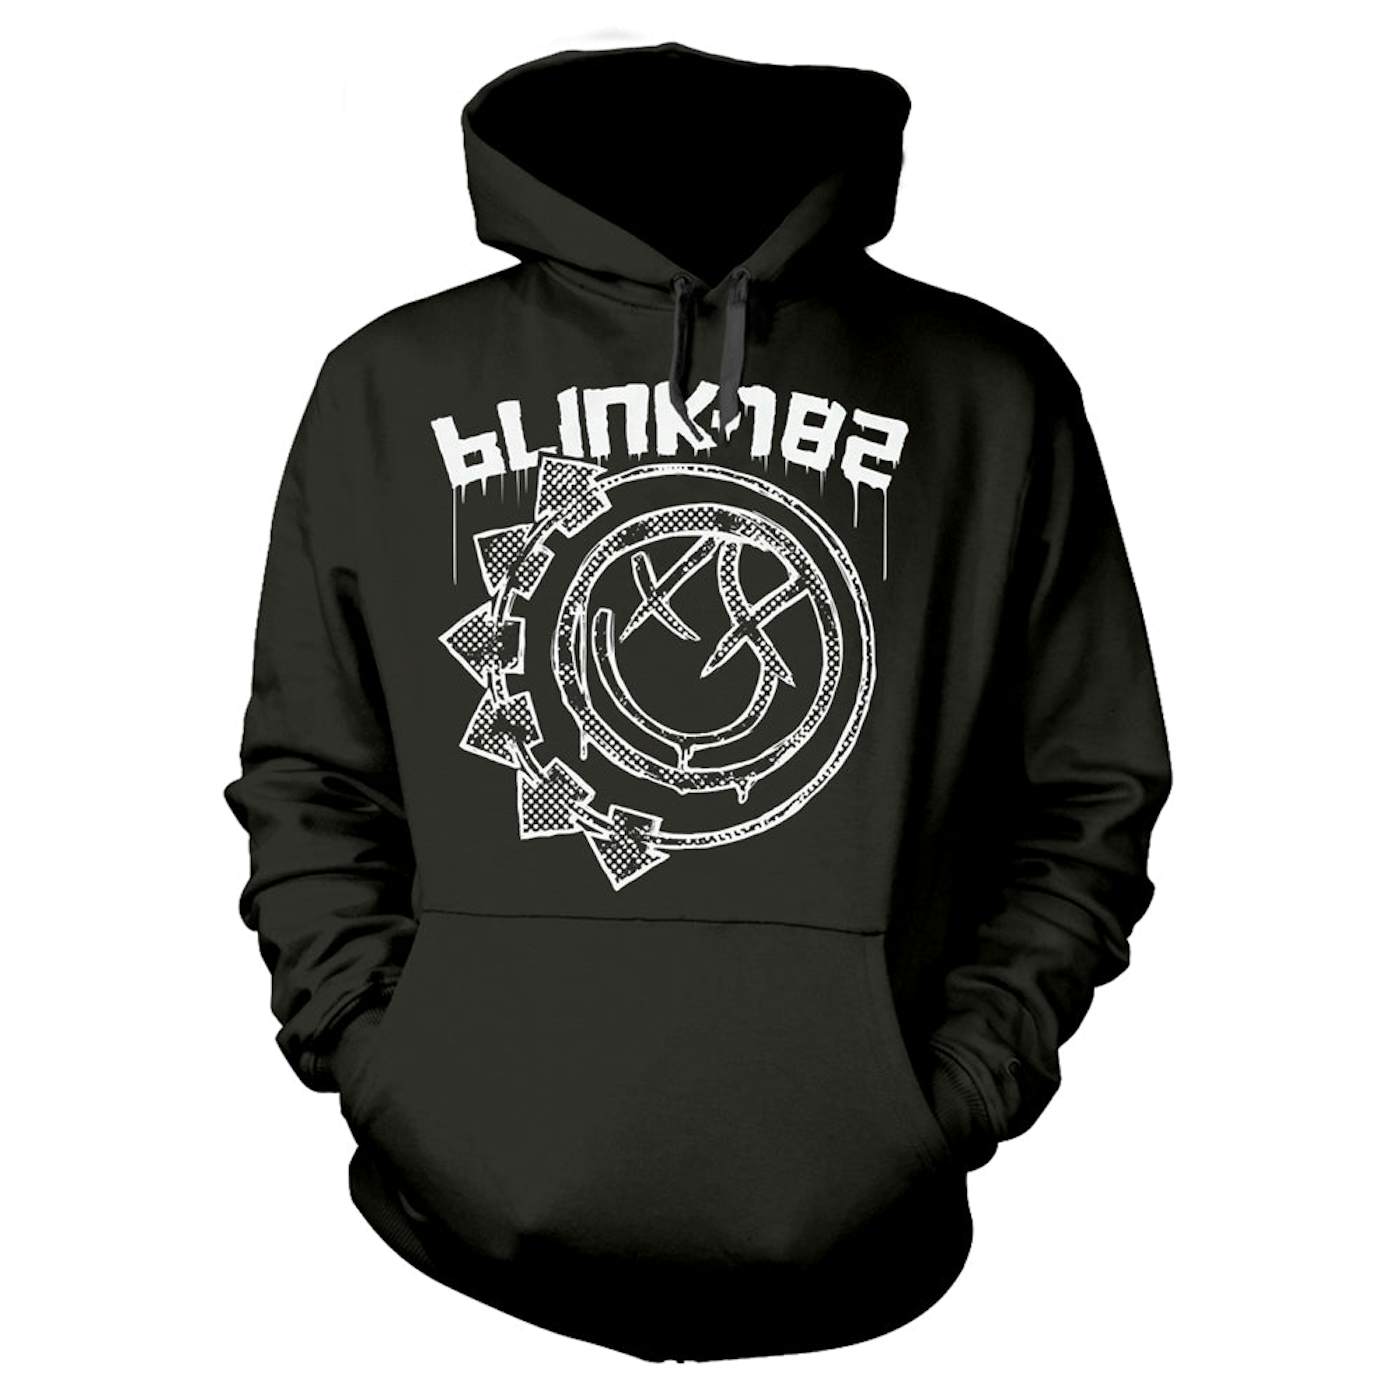 blink-182 Hoodie - Stamp